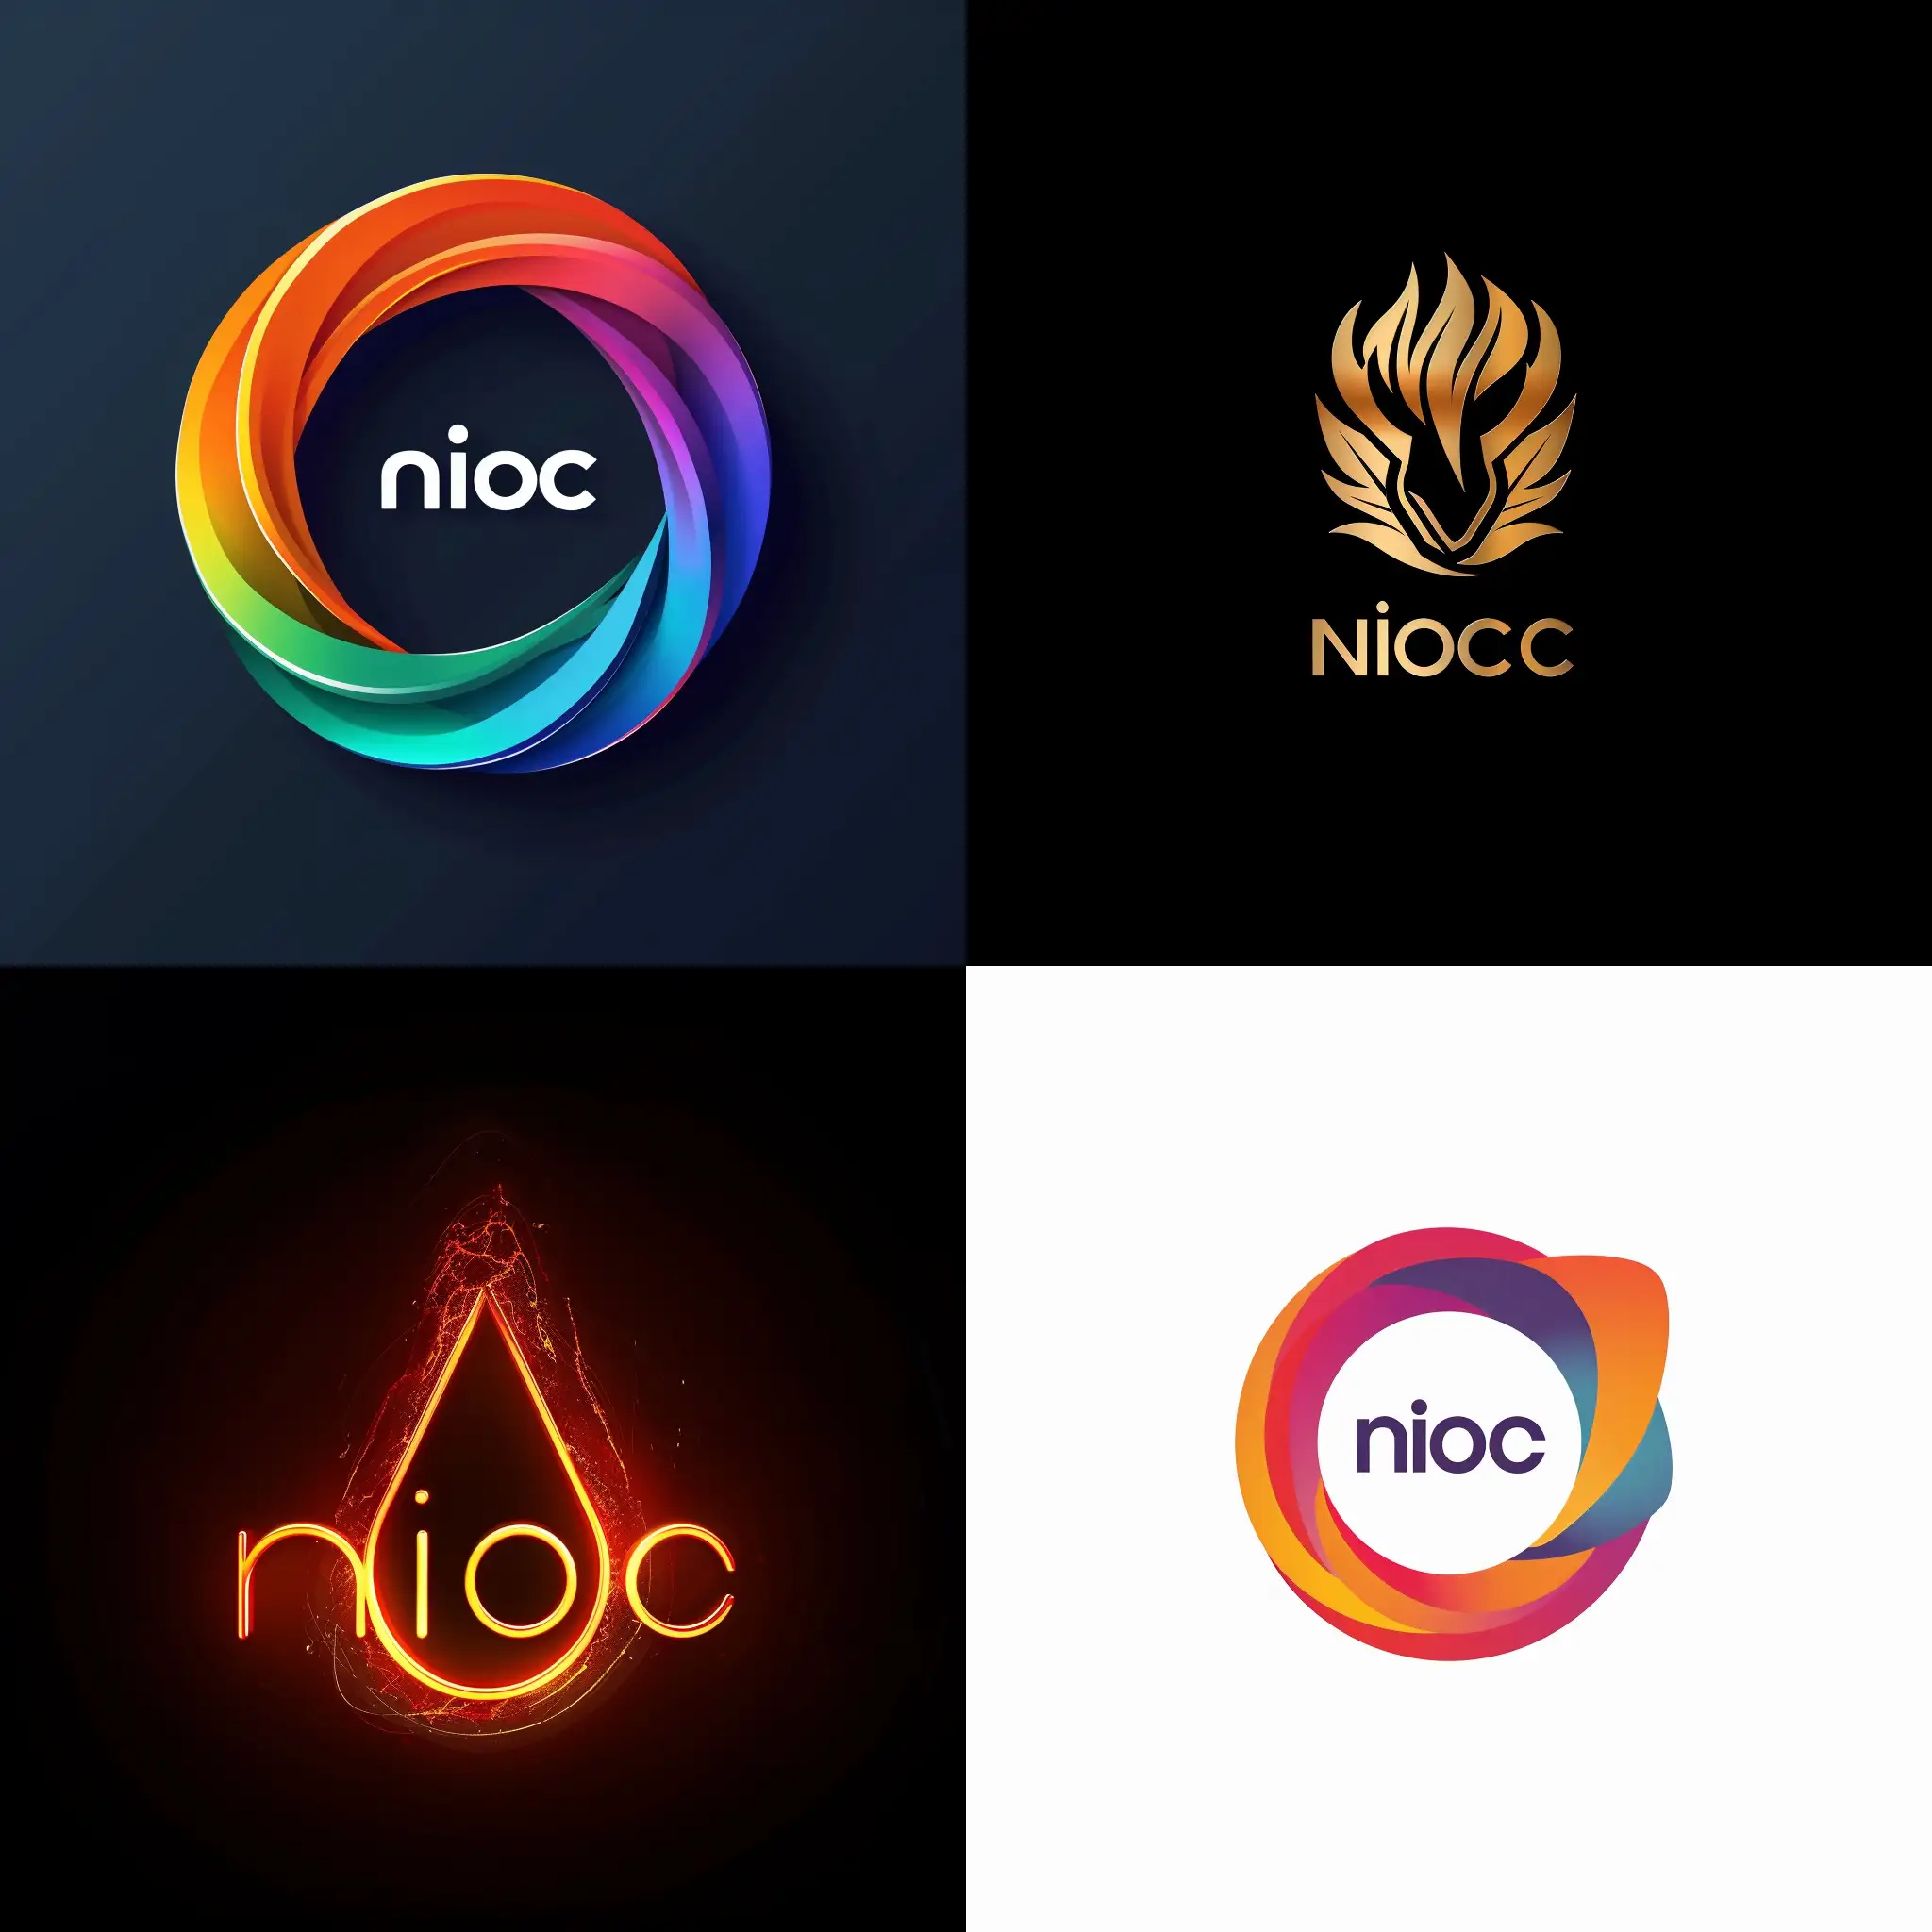 The Nioc logo